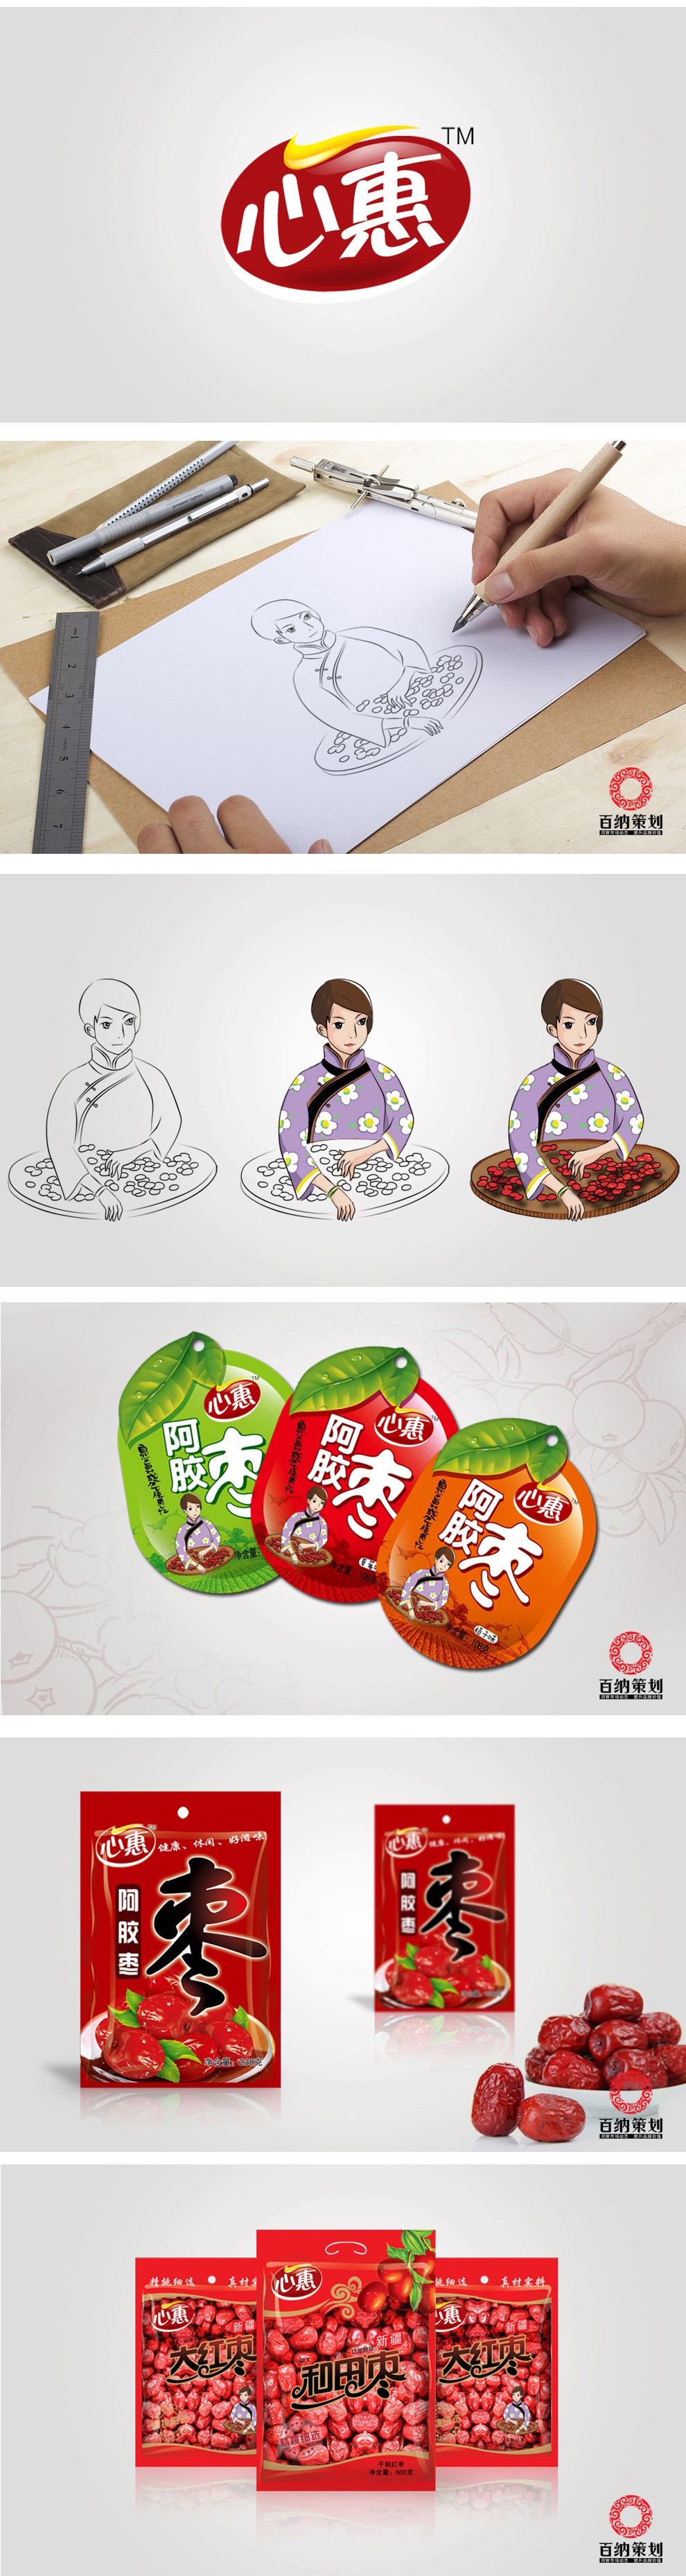 【百纳食品包装设计】心惠品牌整合案例